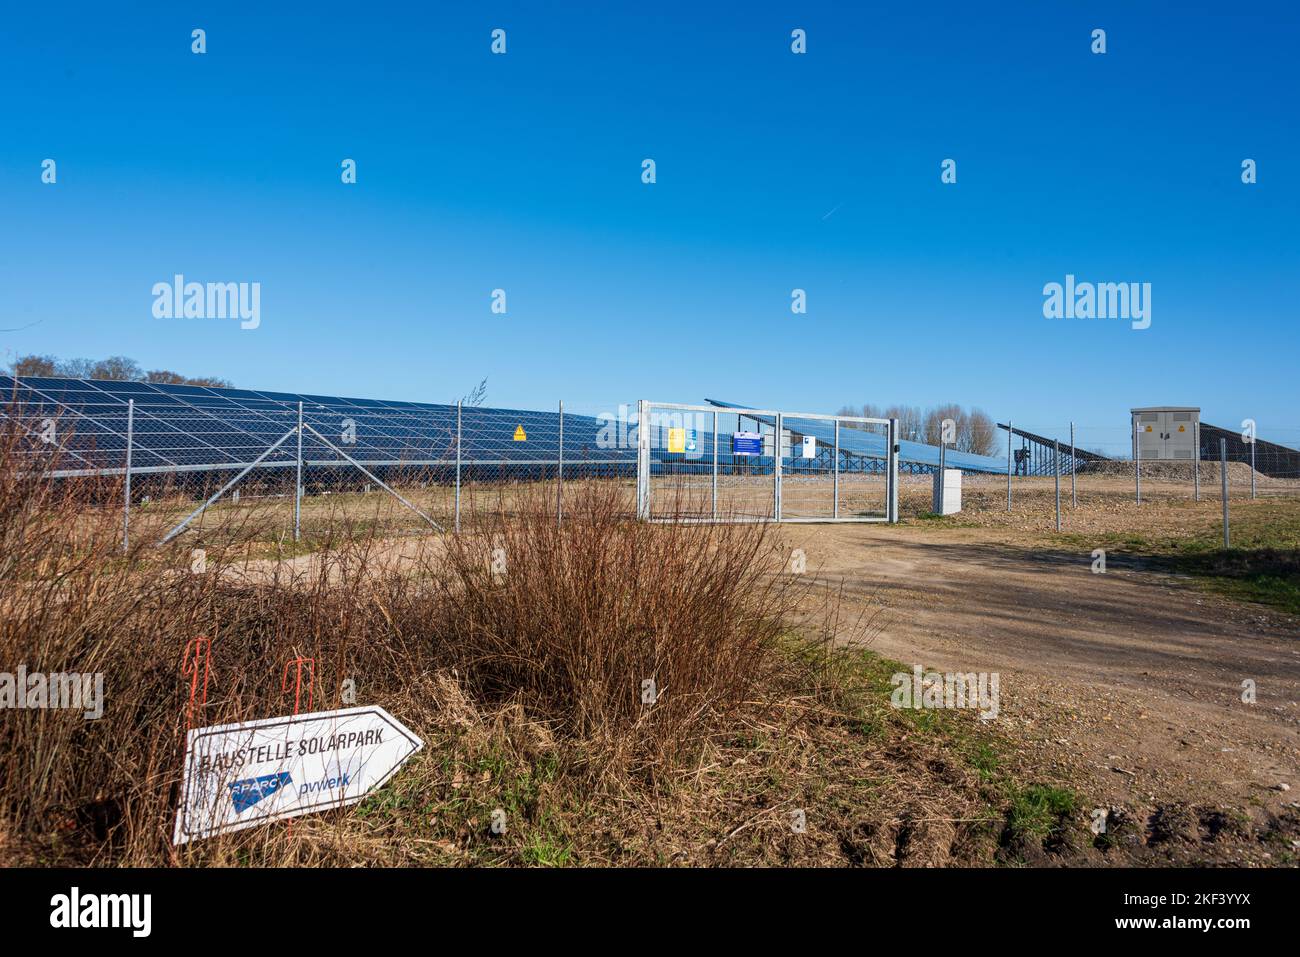 Schleswig-Holstein, Deutschland, März 2022  Photovoltaikanlage zur Stromerzeugung am Rande einer Autobahn, Schild Baustelle Solarpark Stock Photo